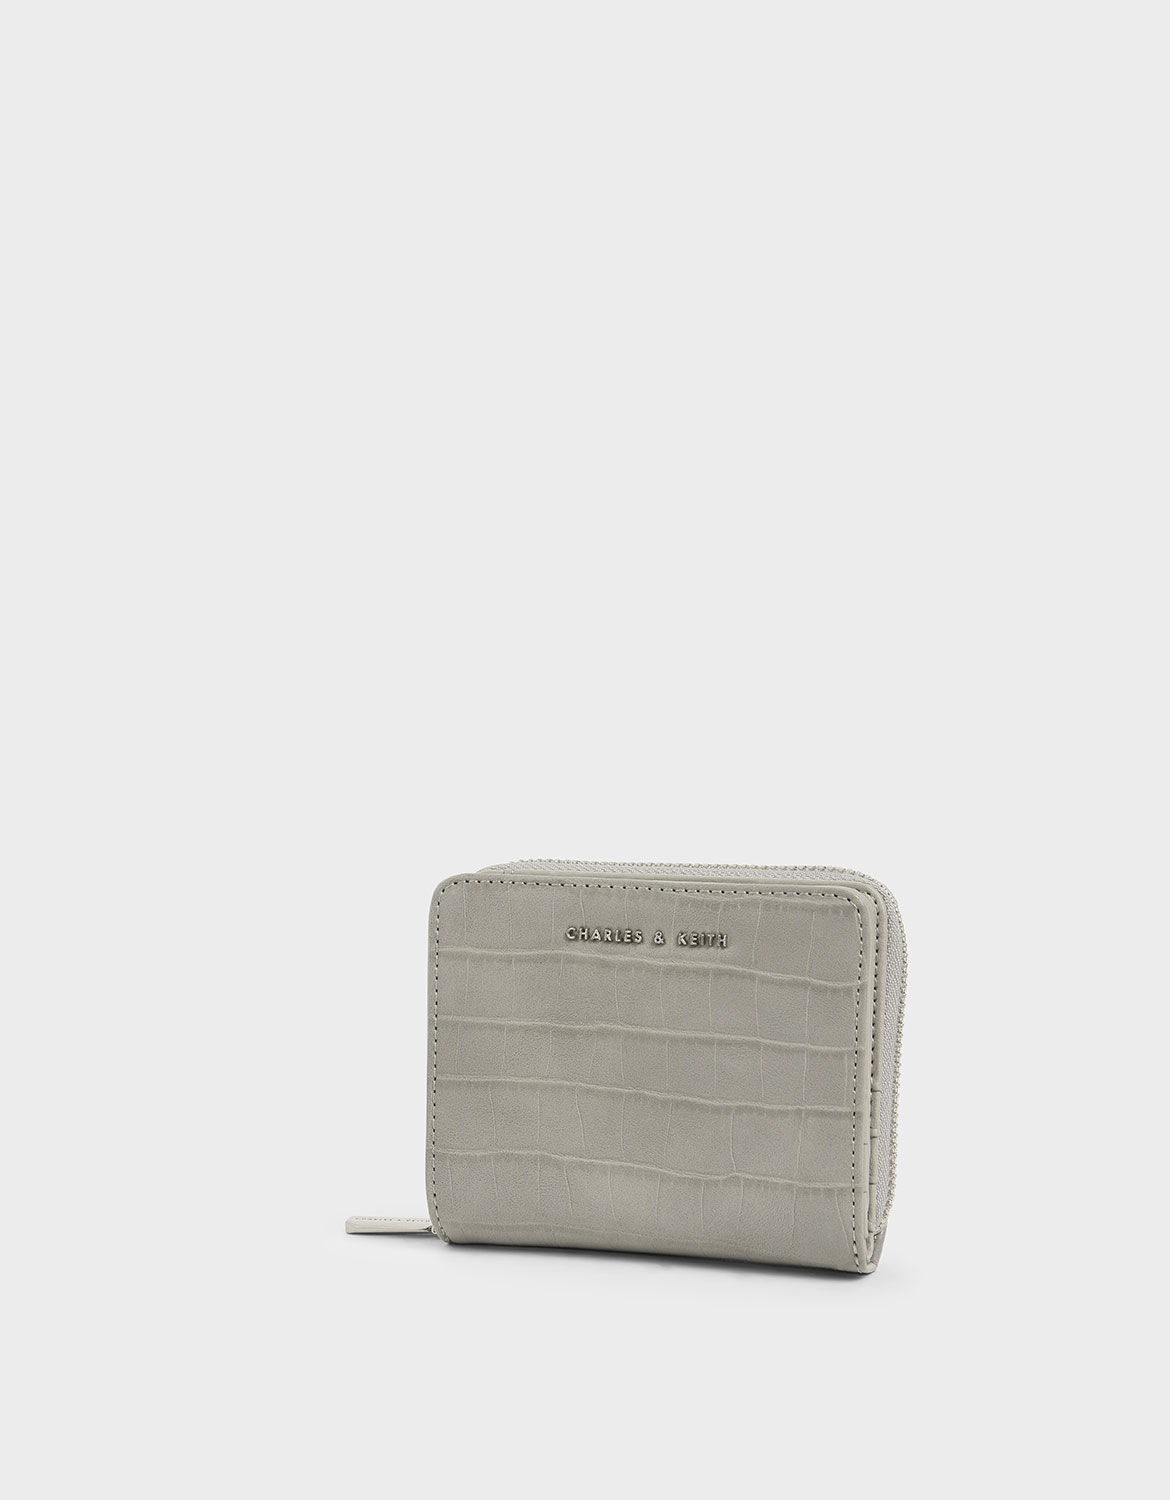 Croc-Effect Small Zip-Around Wallet, Light Grey, hi-res